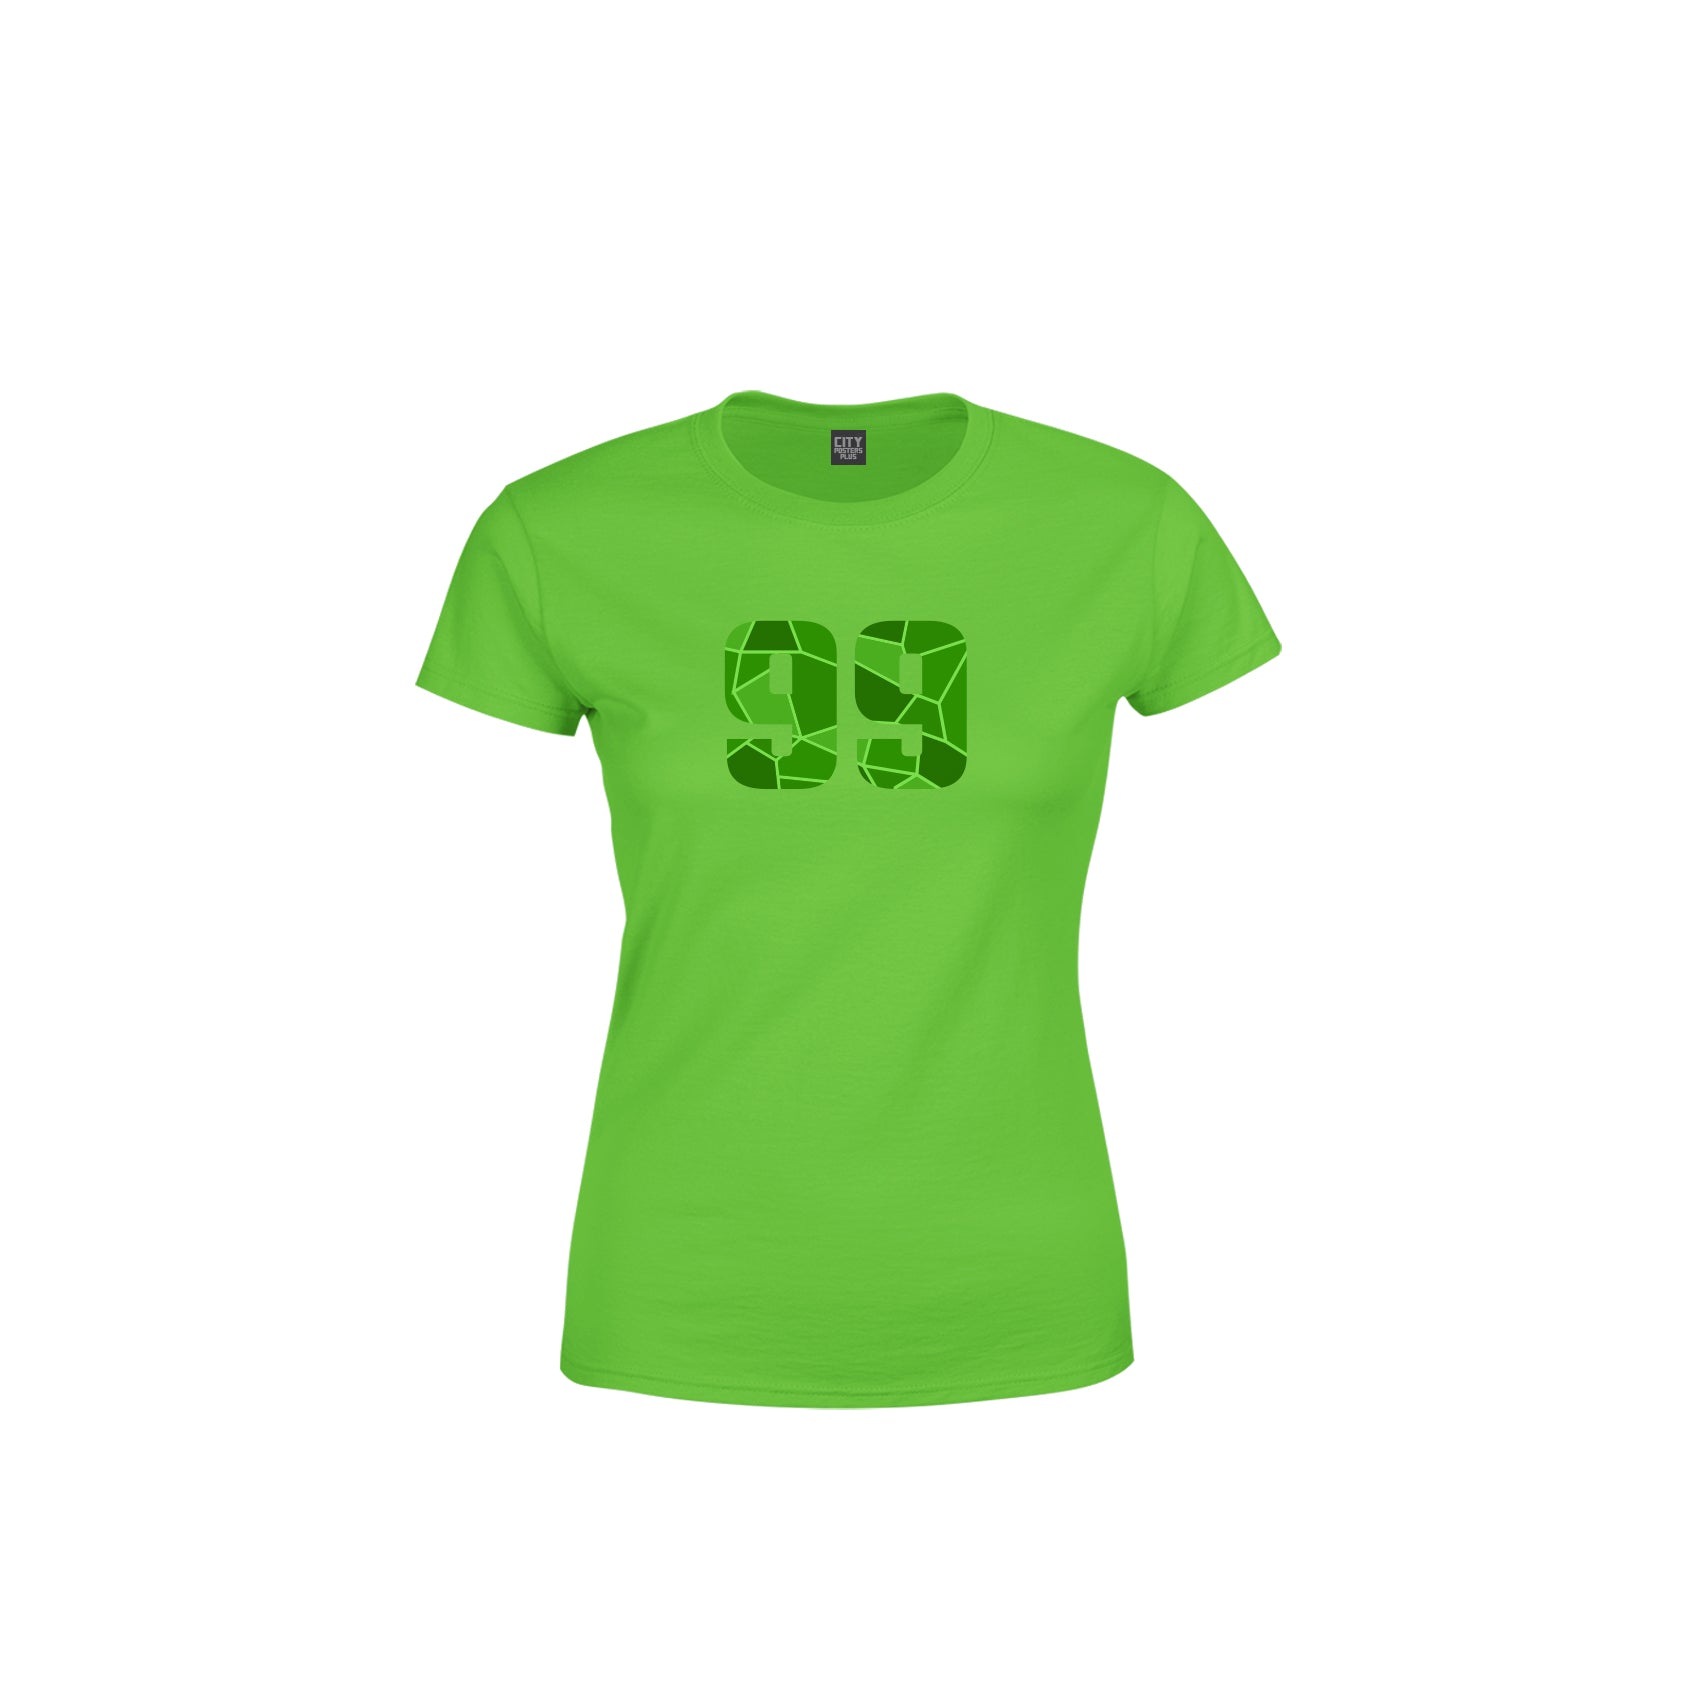 99 Number Women's T-Shirt (Liril Green)